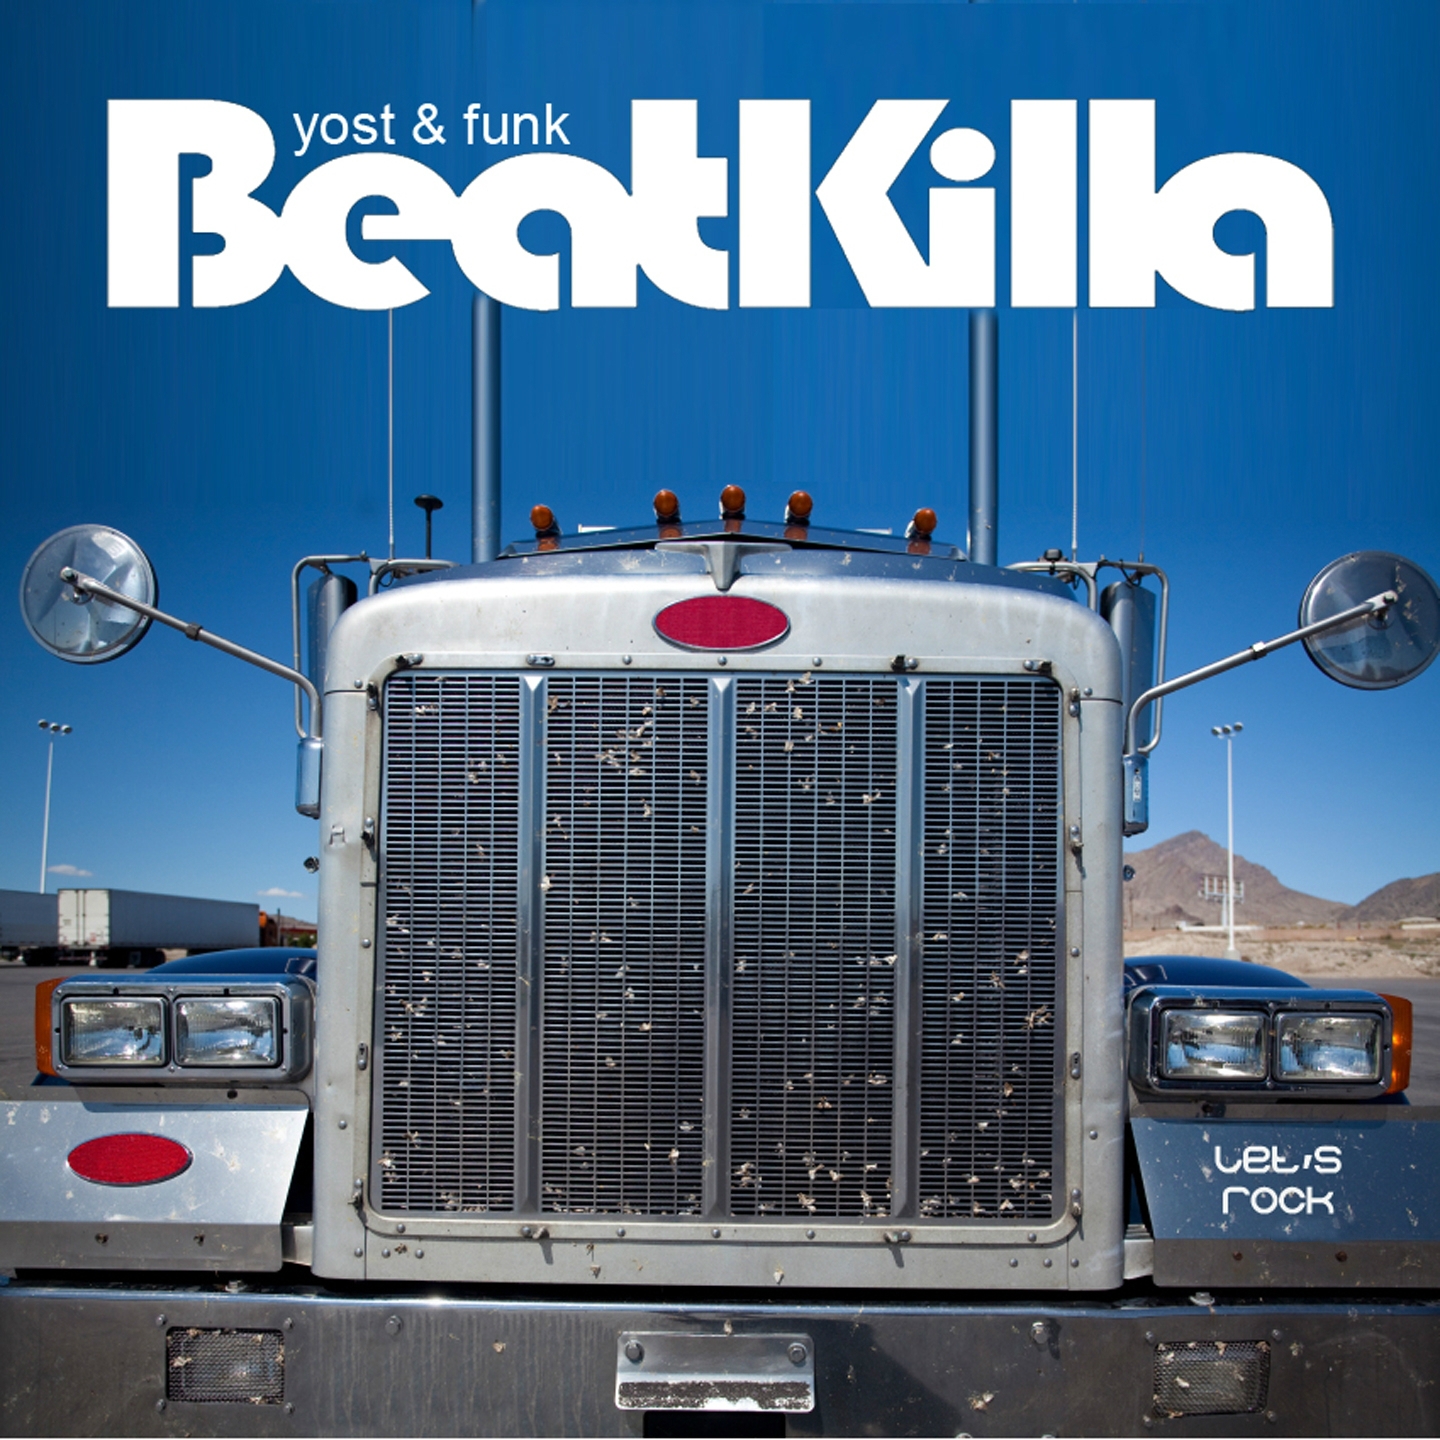 Beatkilla: Let's Rock